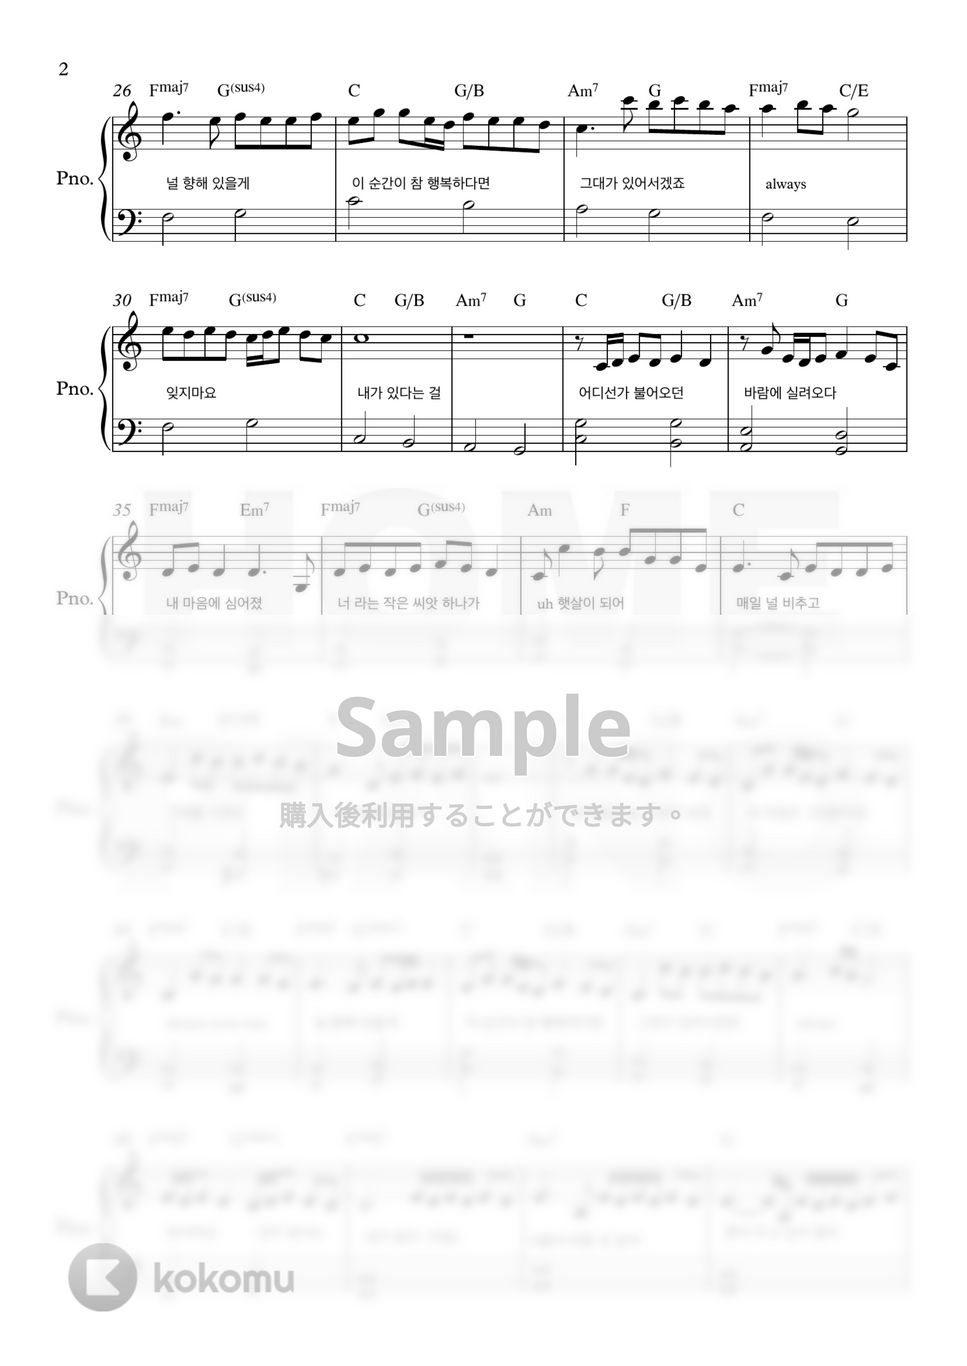 愛の不時着 OST - flower (初級) by HOME PIANO